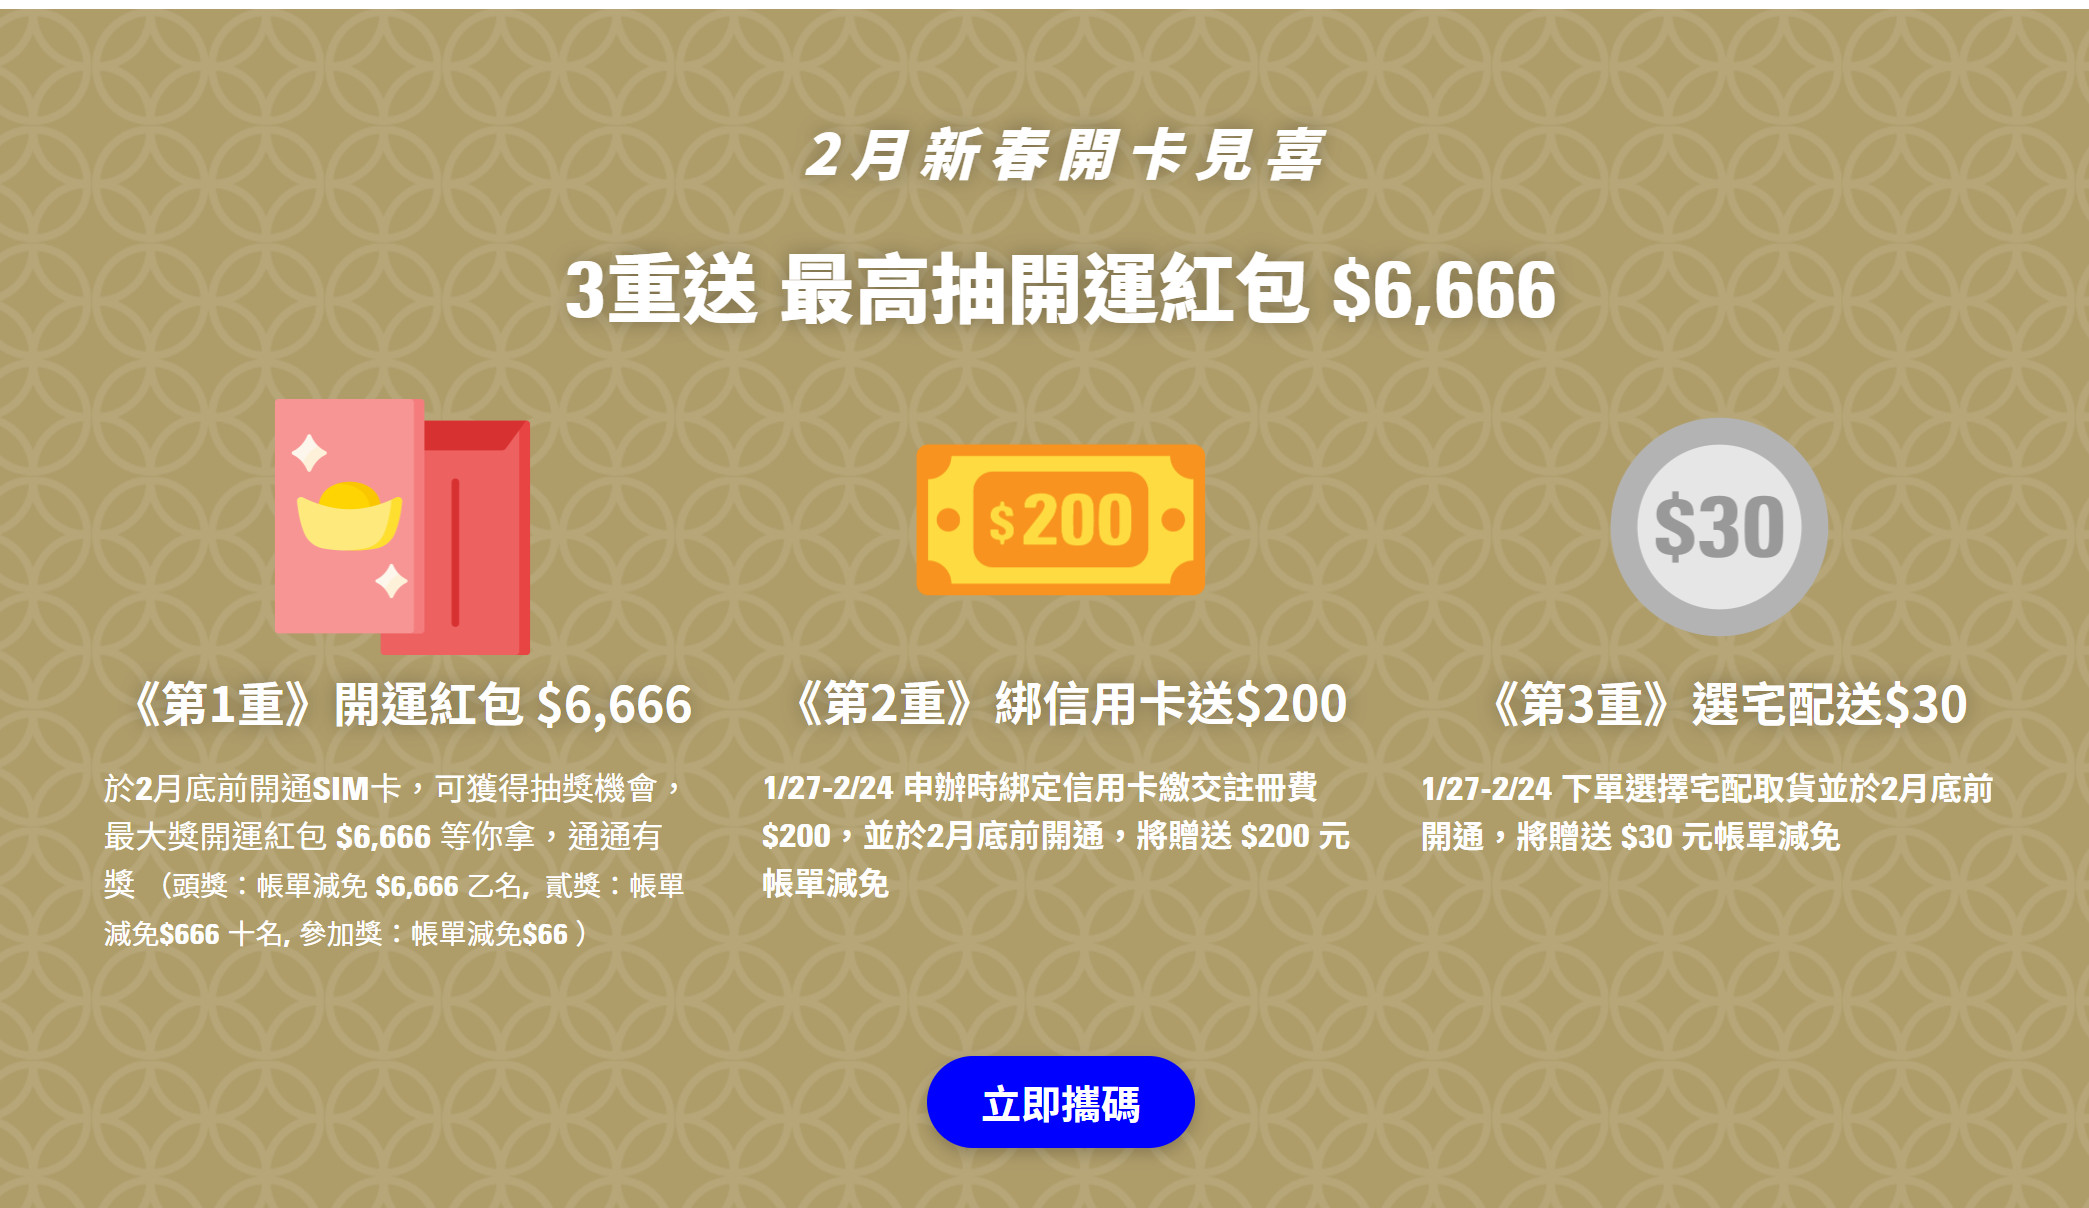 【無框行動】新春專案，中華電信大4G網路吃到飽466元，低流量只要166元!超適合搭配台灣之星雙11專案。 - 台灣之星雙11 - 敗家達人推薦